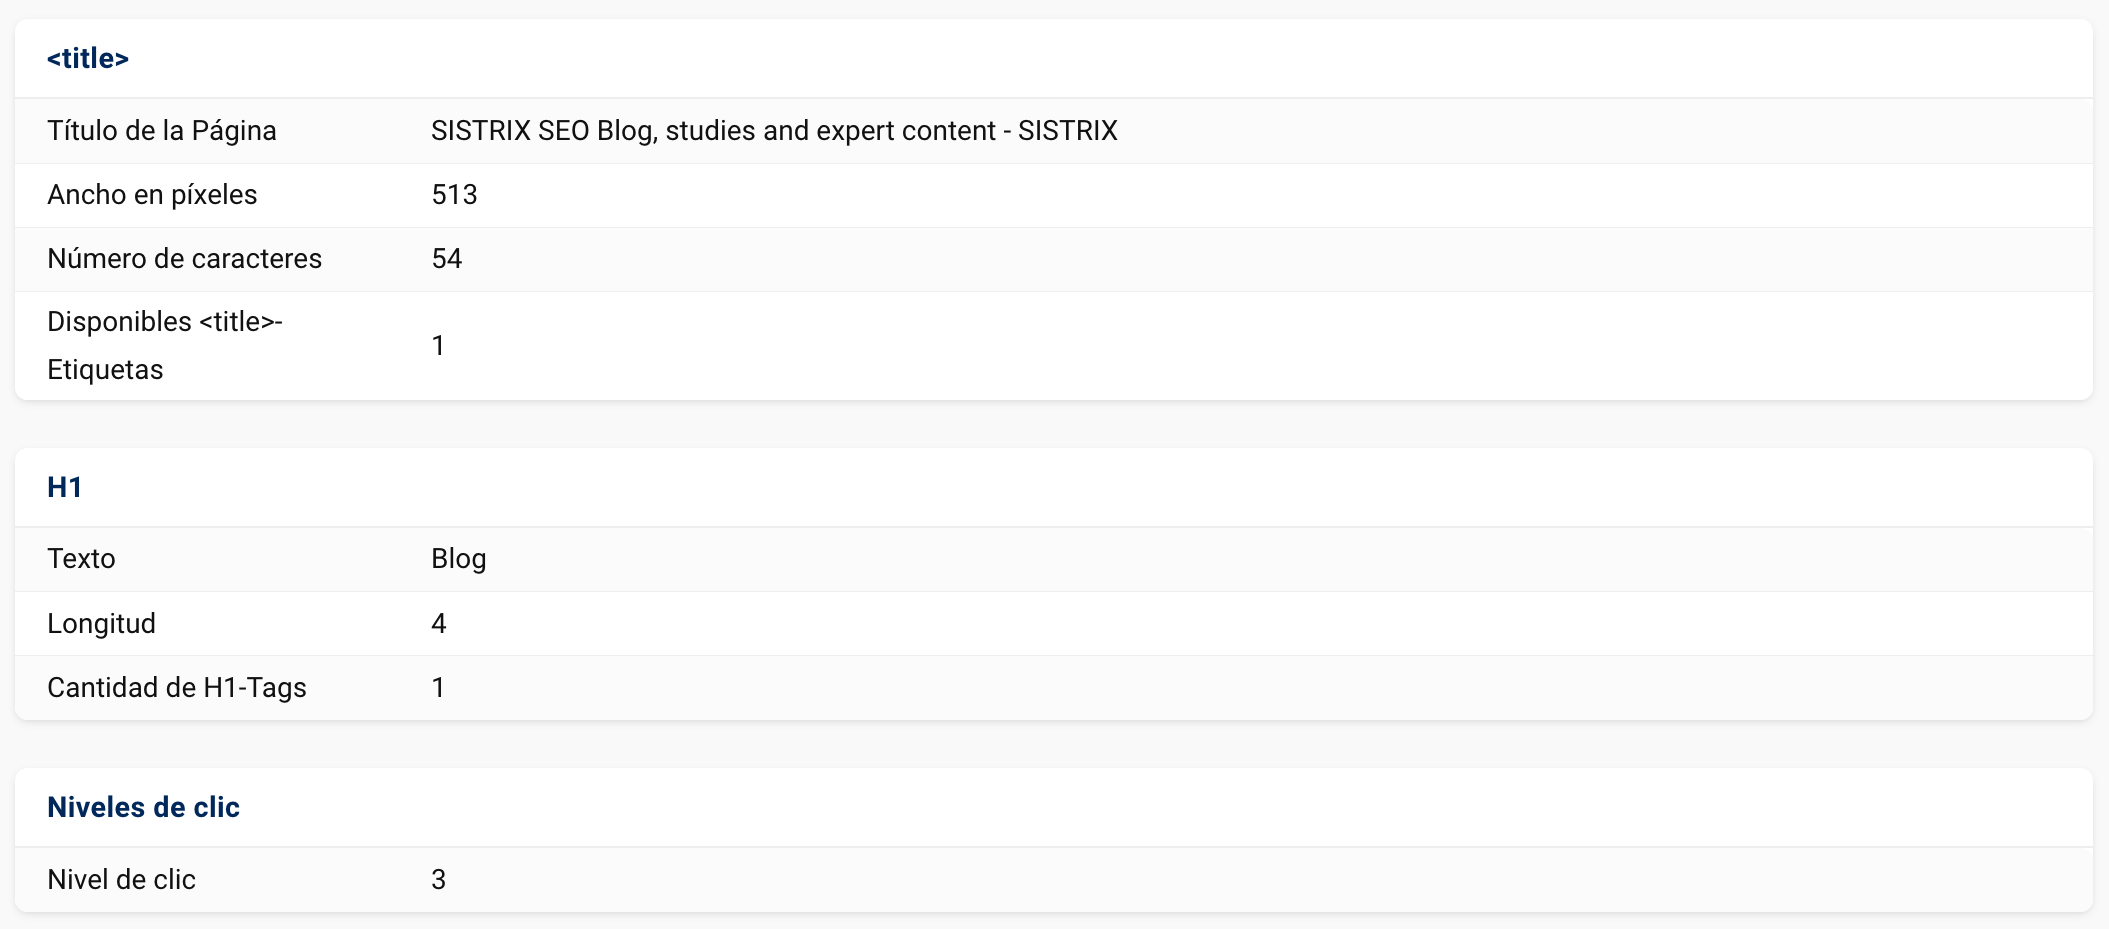 Apartado Resumen de la función "URL Explorer" mostrando title, H1 y Niveles de clic "https://www.sistrix.com/blog/"